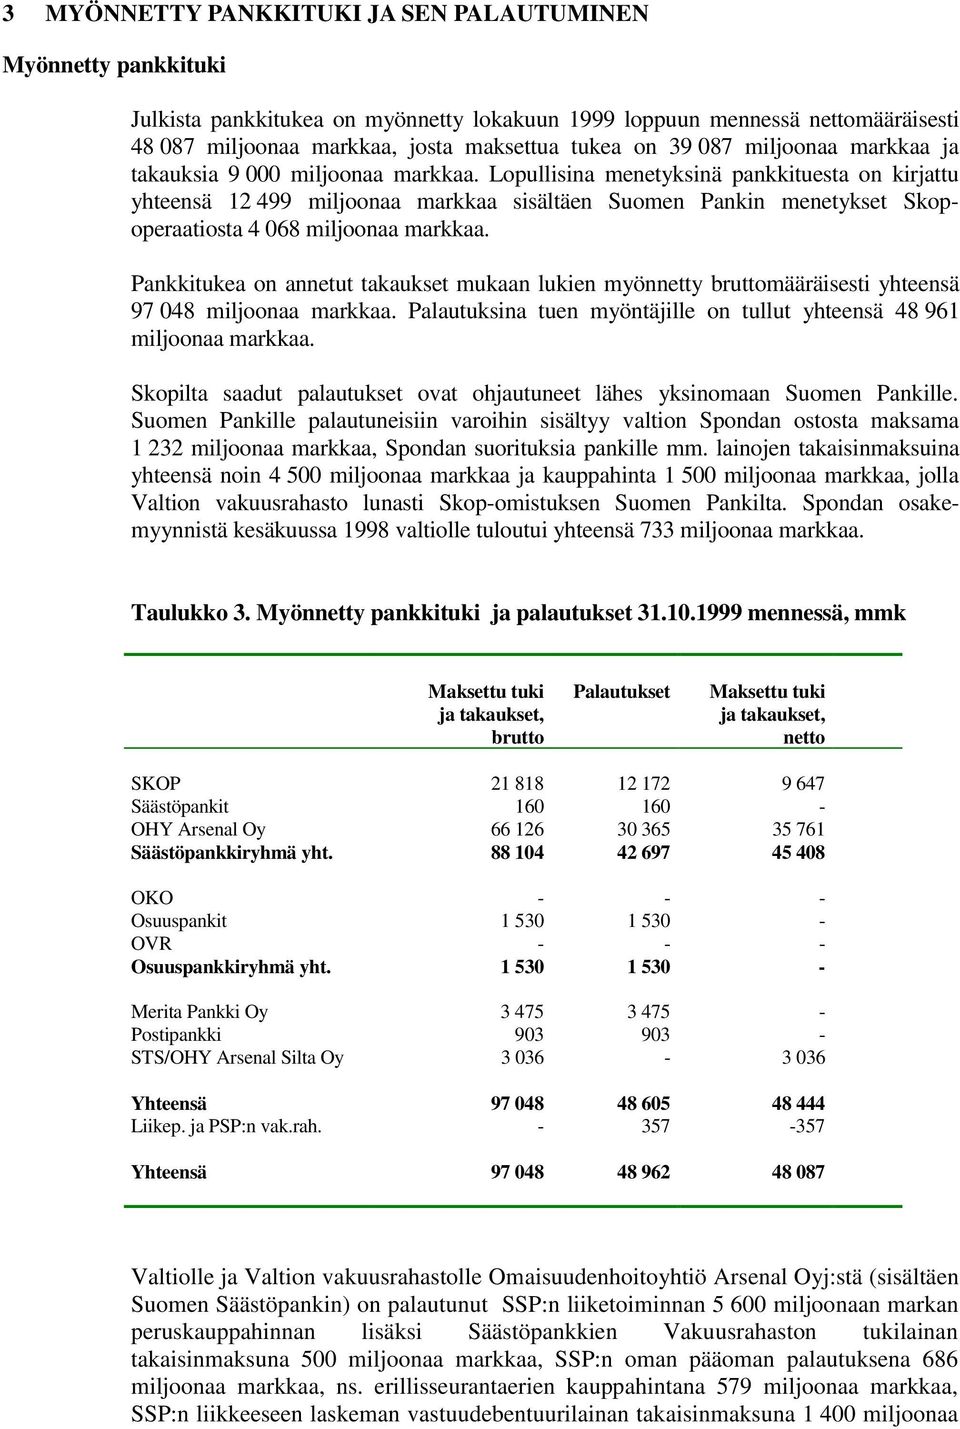 Lopullisina menetyksinä pankkituesta on kirjattu yhteensä 12 499 miljoonaa markkaa sisältäen Suomen Pankin menetykset Skopoperaatiosta 4 068 miljoonaa markkaa.